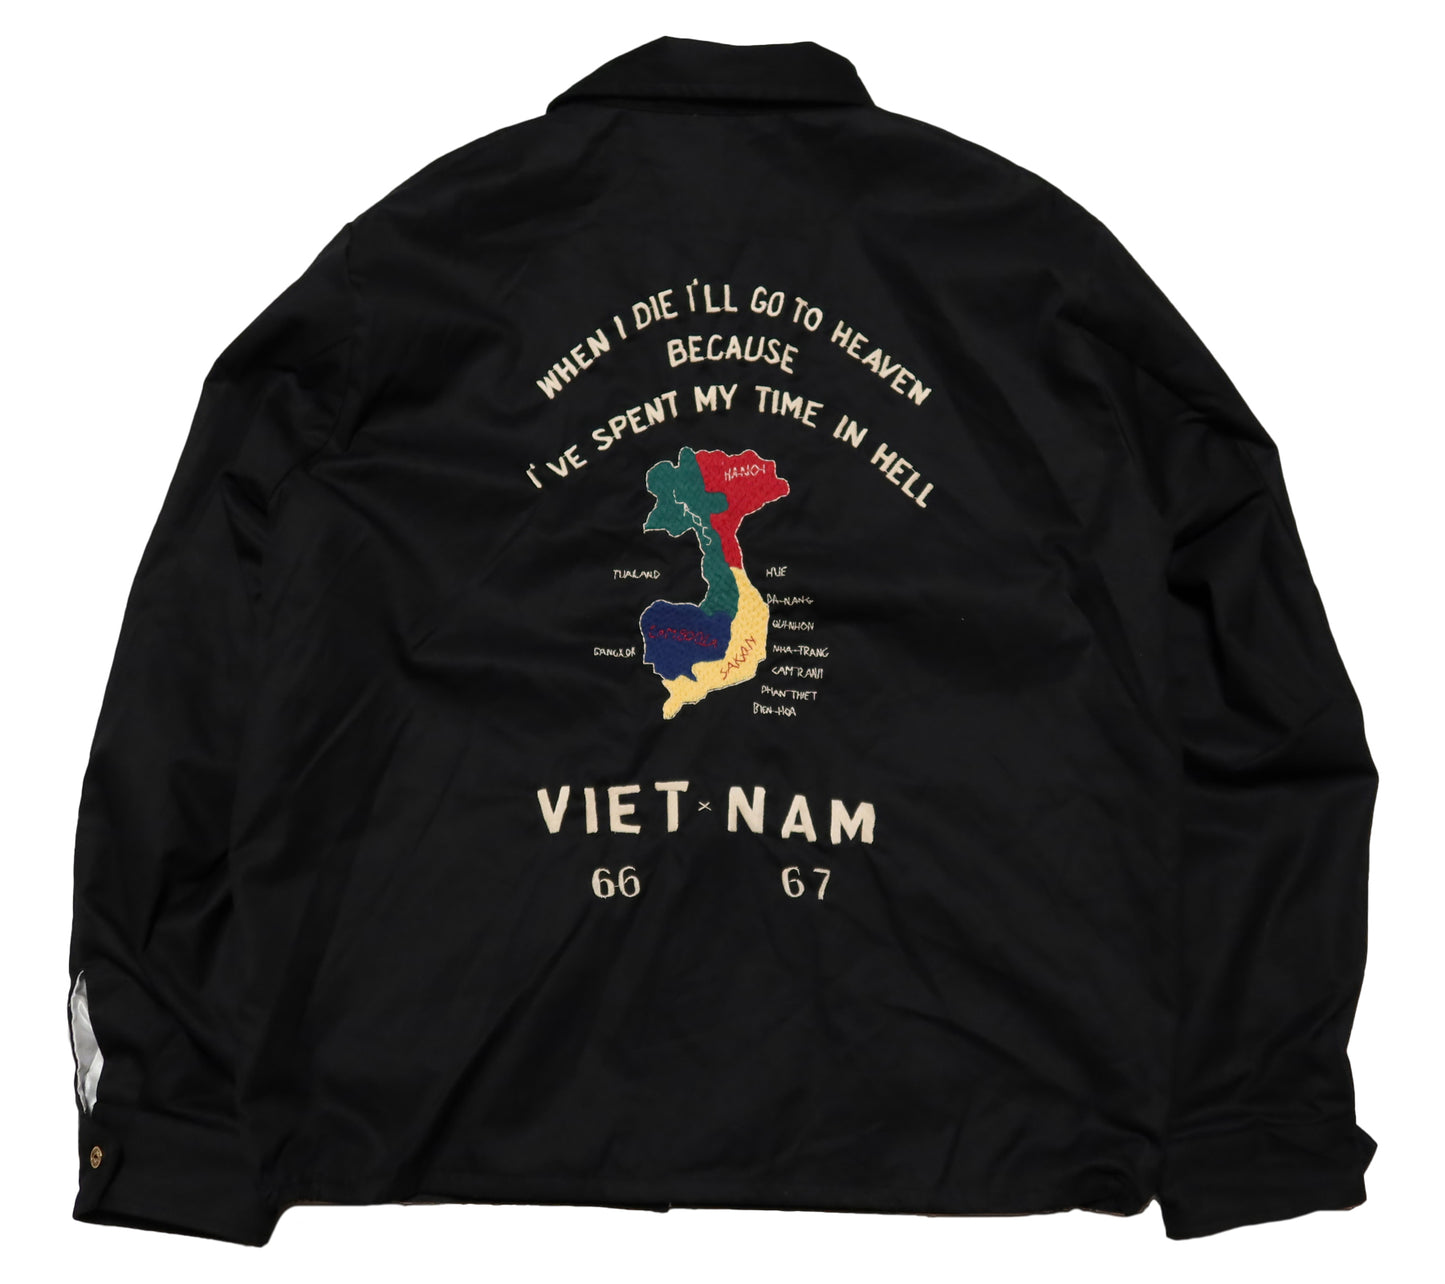 TAILOR TOYO テーラー東洋 ベトジャン ベトナムマップ TT15493 コットンツイル ベトナムジャケット